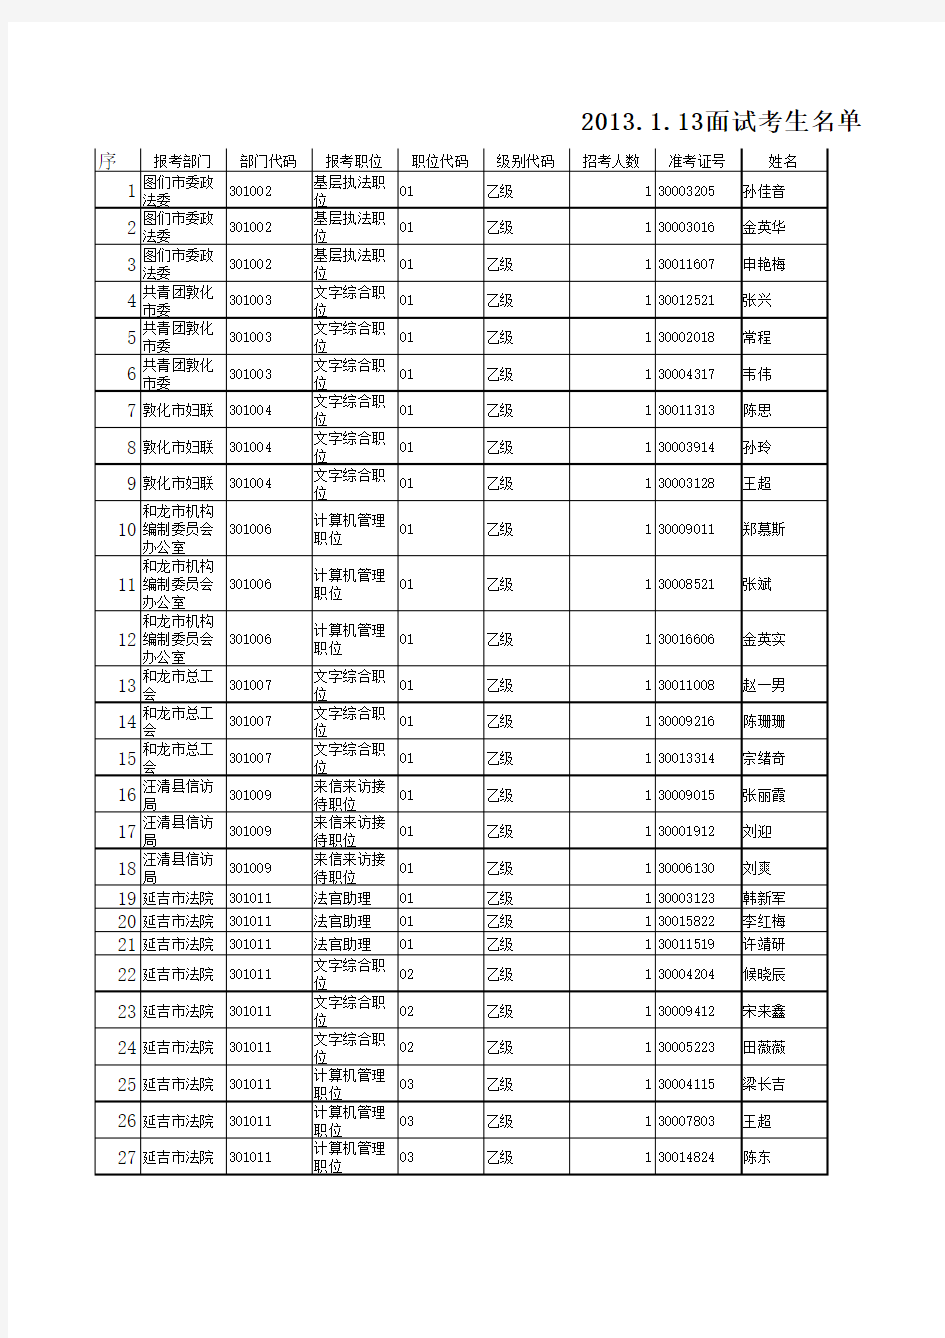 2012年延边州各级机关考试录用公务员面试时间安排表(附件)